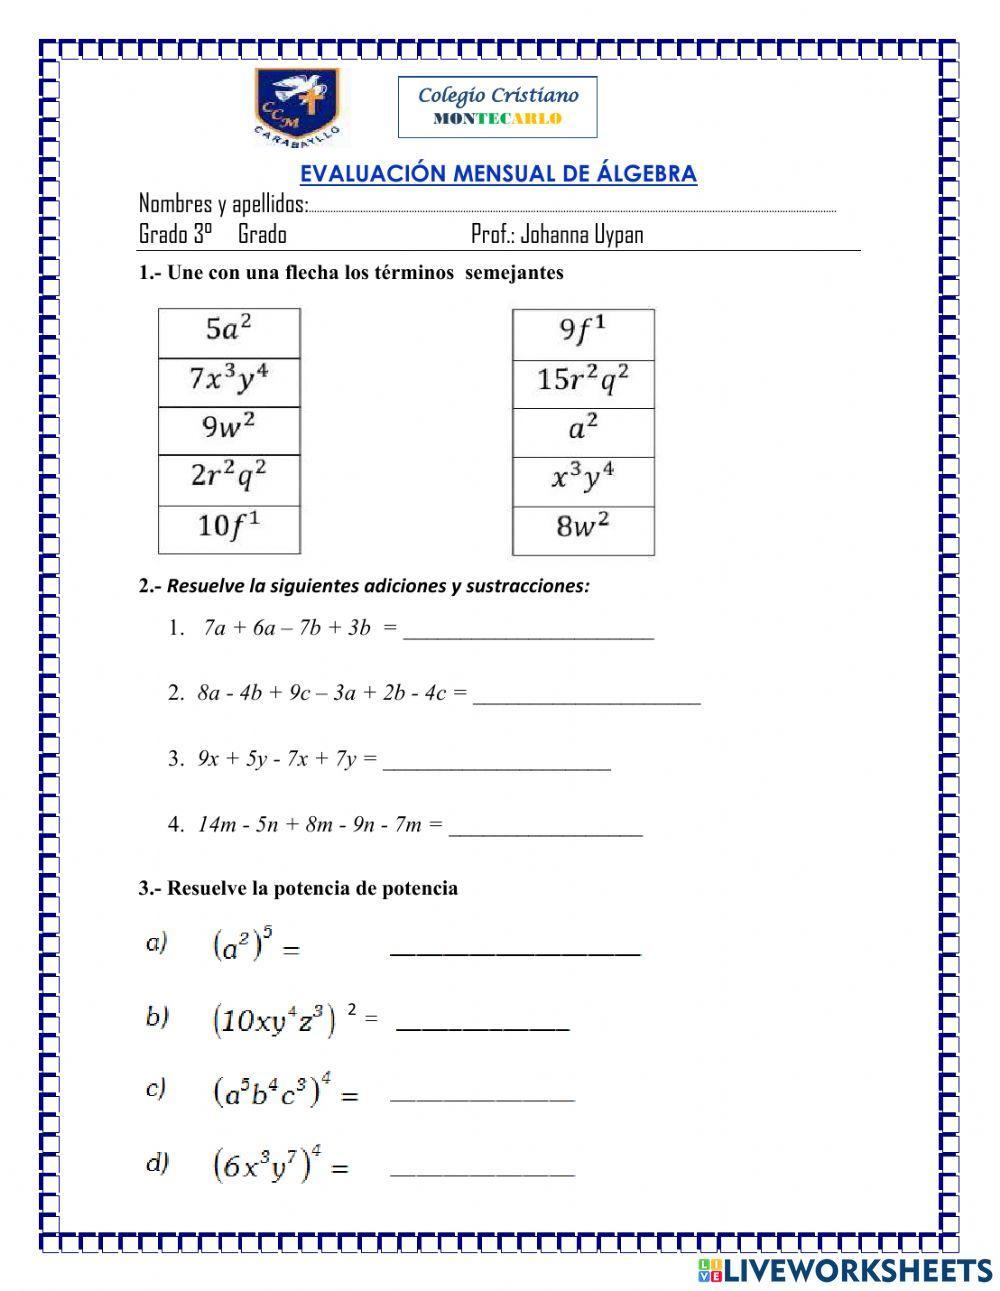 Evaluación final algebra